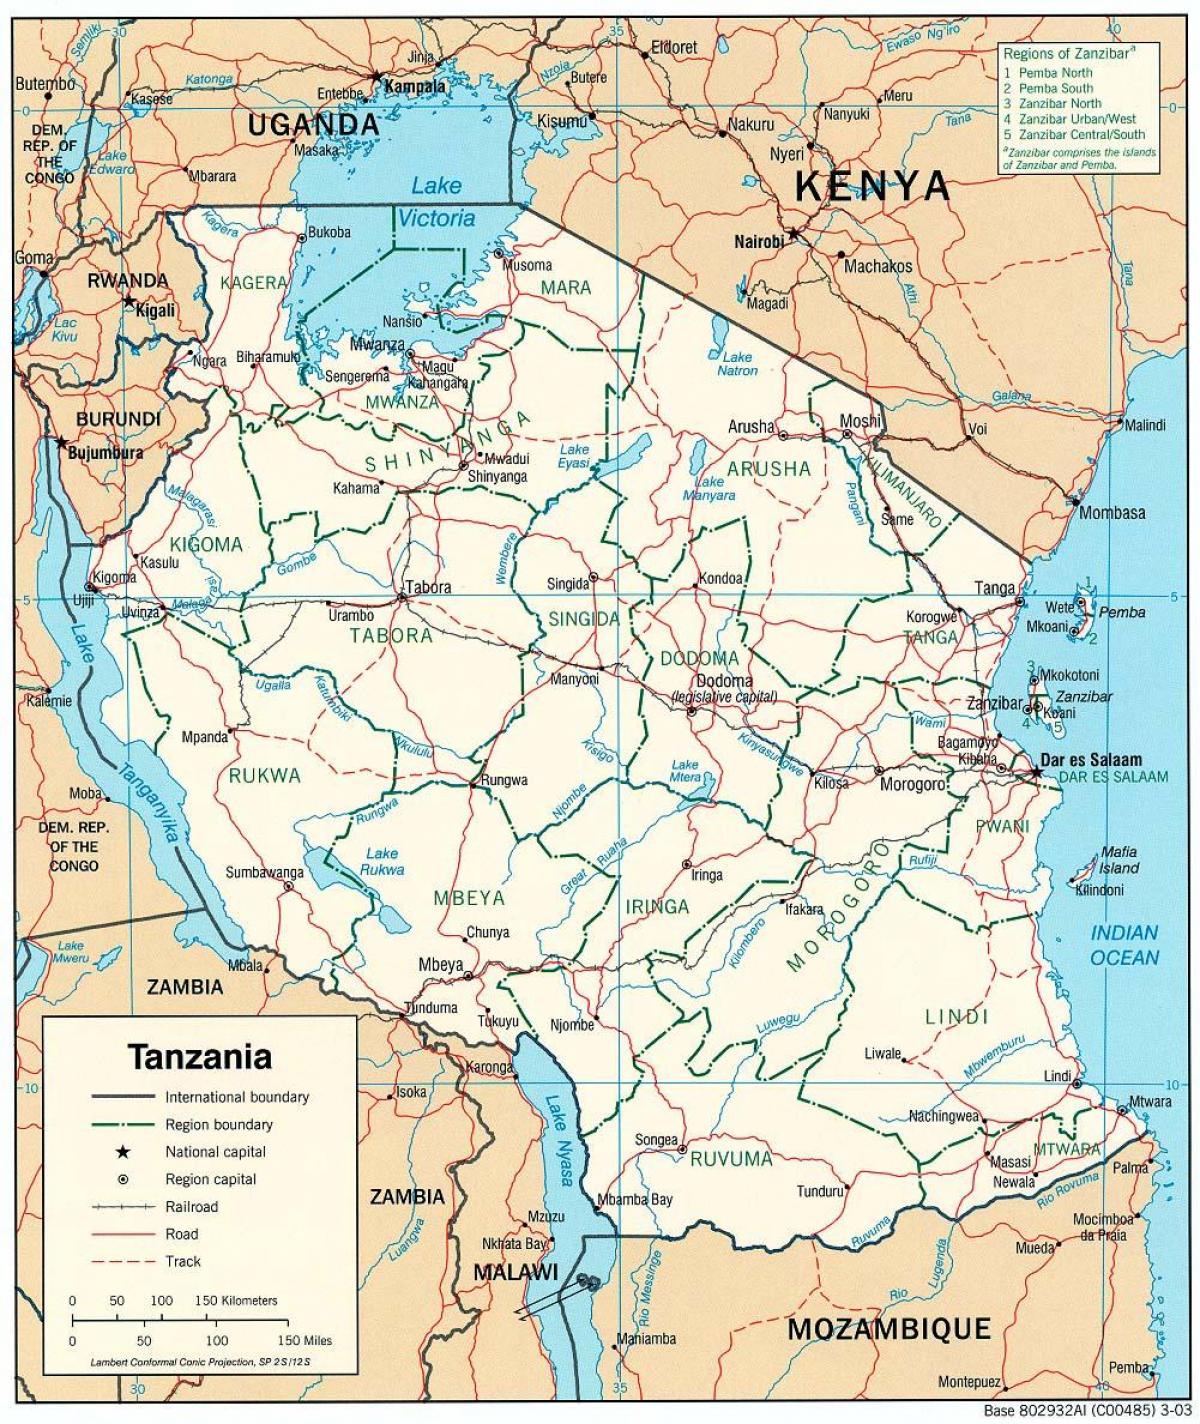 המפה החדשה של טנזניה